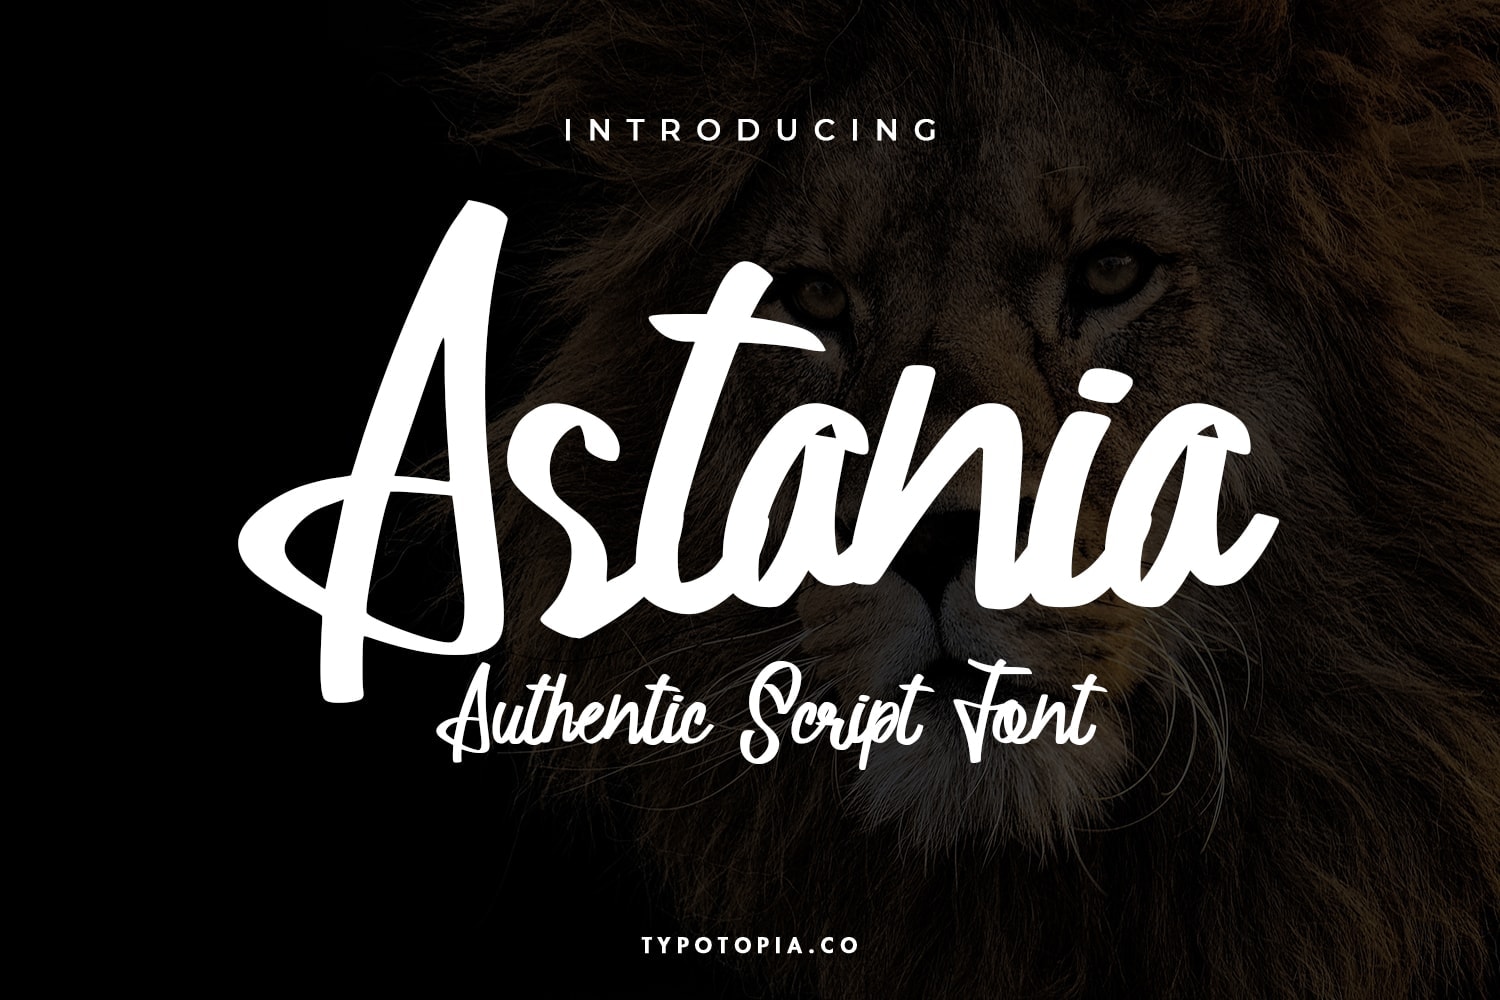 Astania Script Font